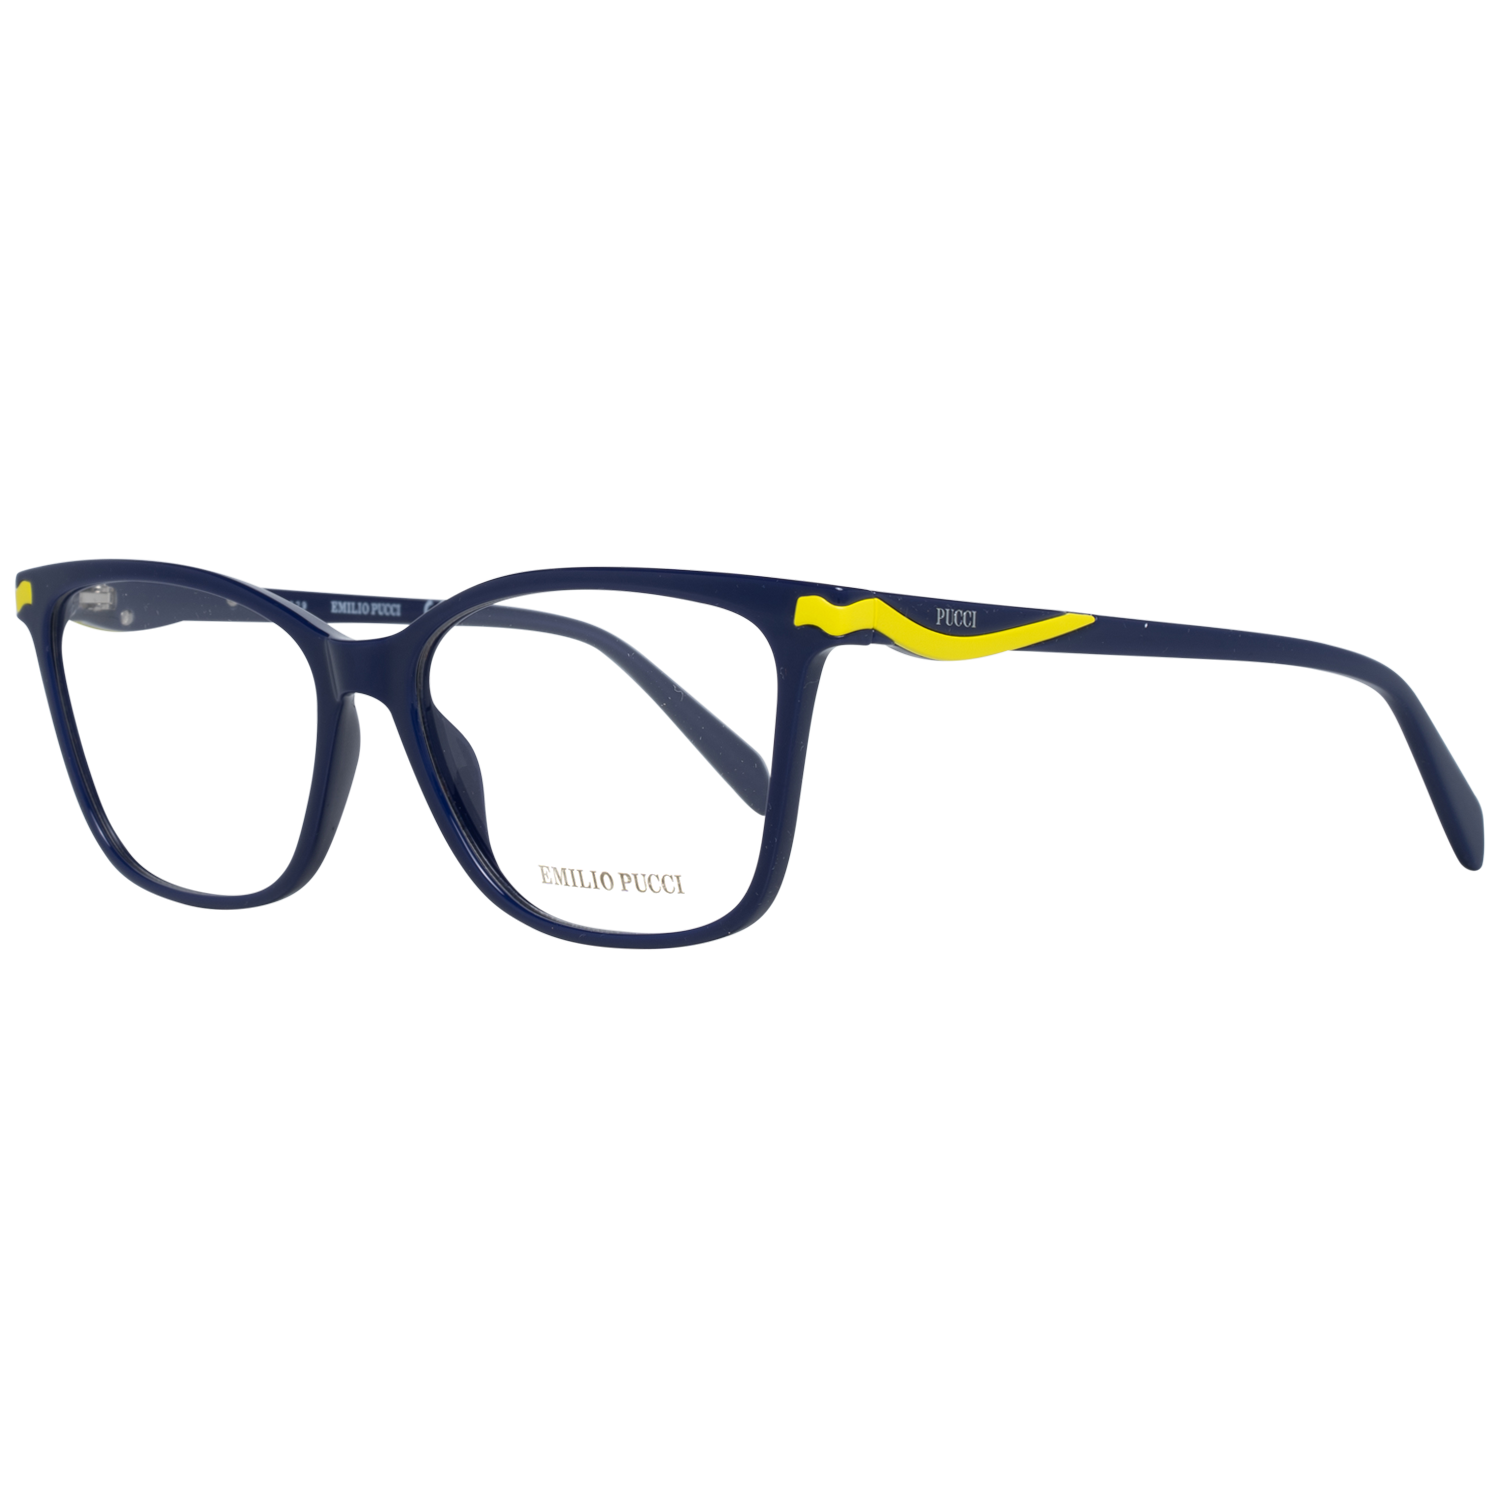 Emilio Pucci Frames Emilio Pucci Optical Frame EP5133 090 55 Eyeglasses Eyewear UK USA Australia 